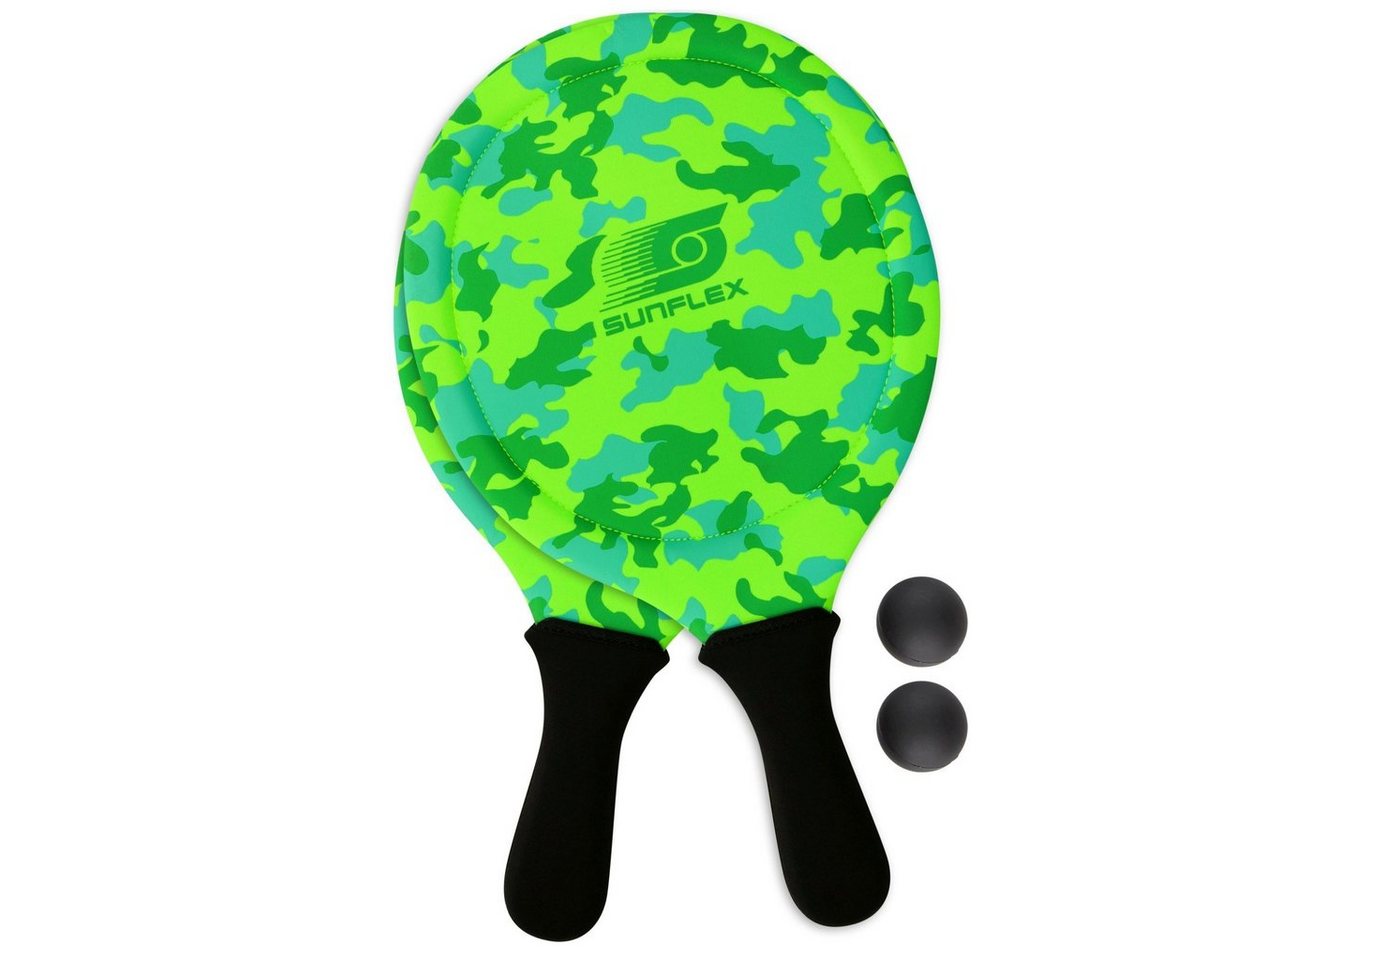 Sunflex Beachballschläger sunflex Beach Ball Set Camo grün, Wasserfest, extrem stabil und griffig von Sunflex